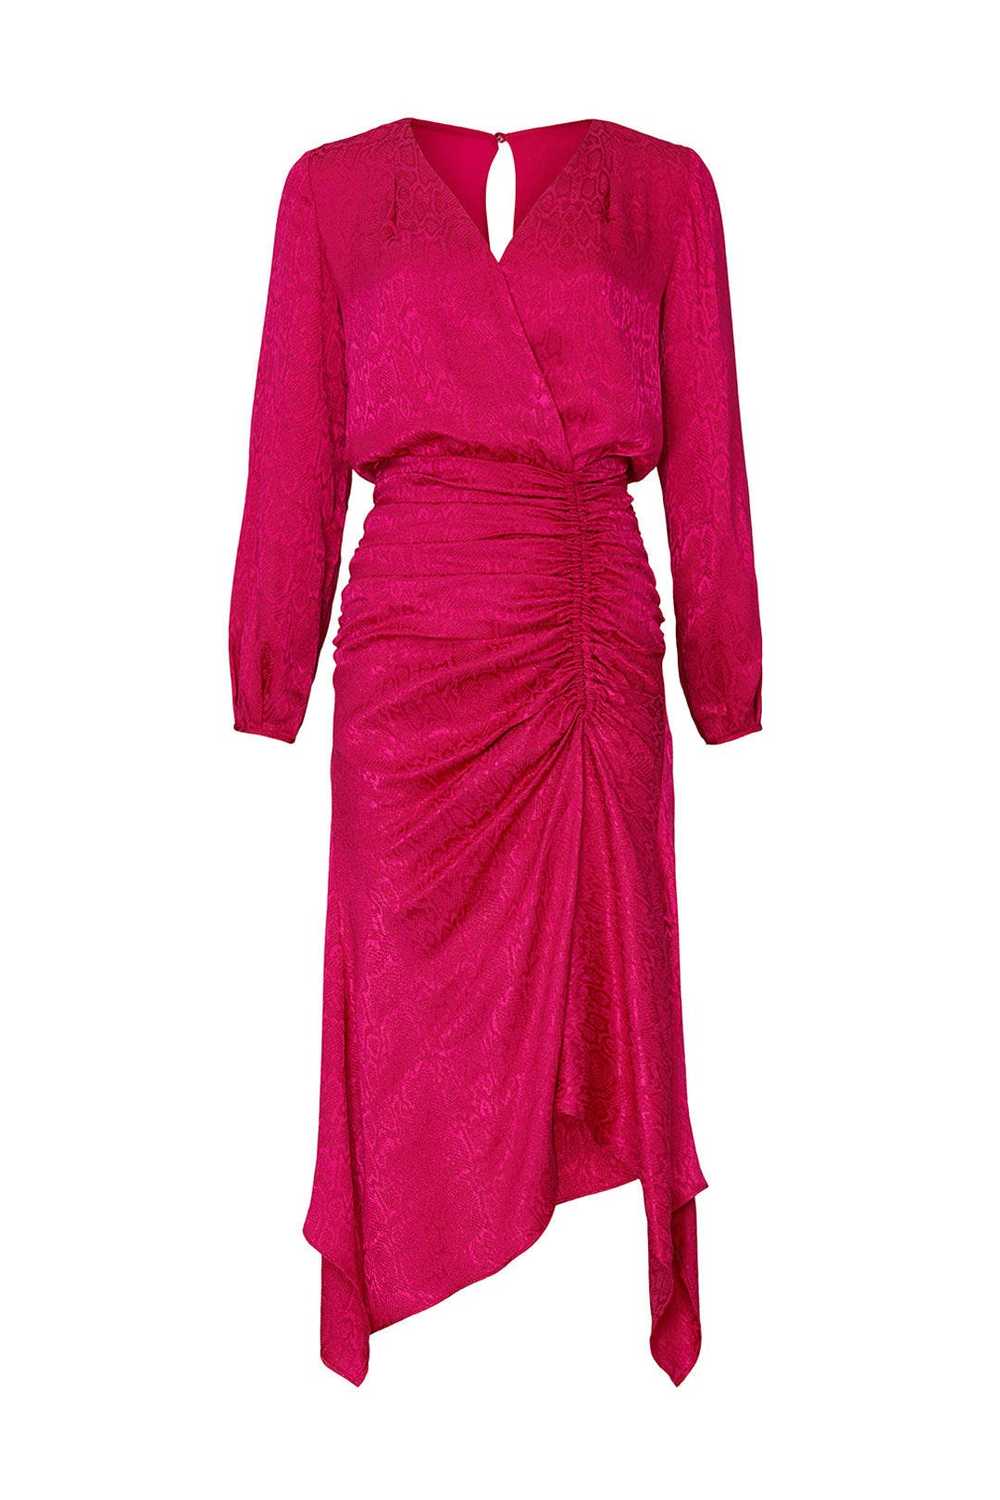 krisa Pink High Low Surplice Dress - image 5